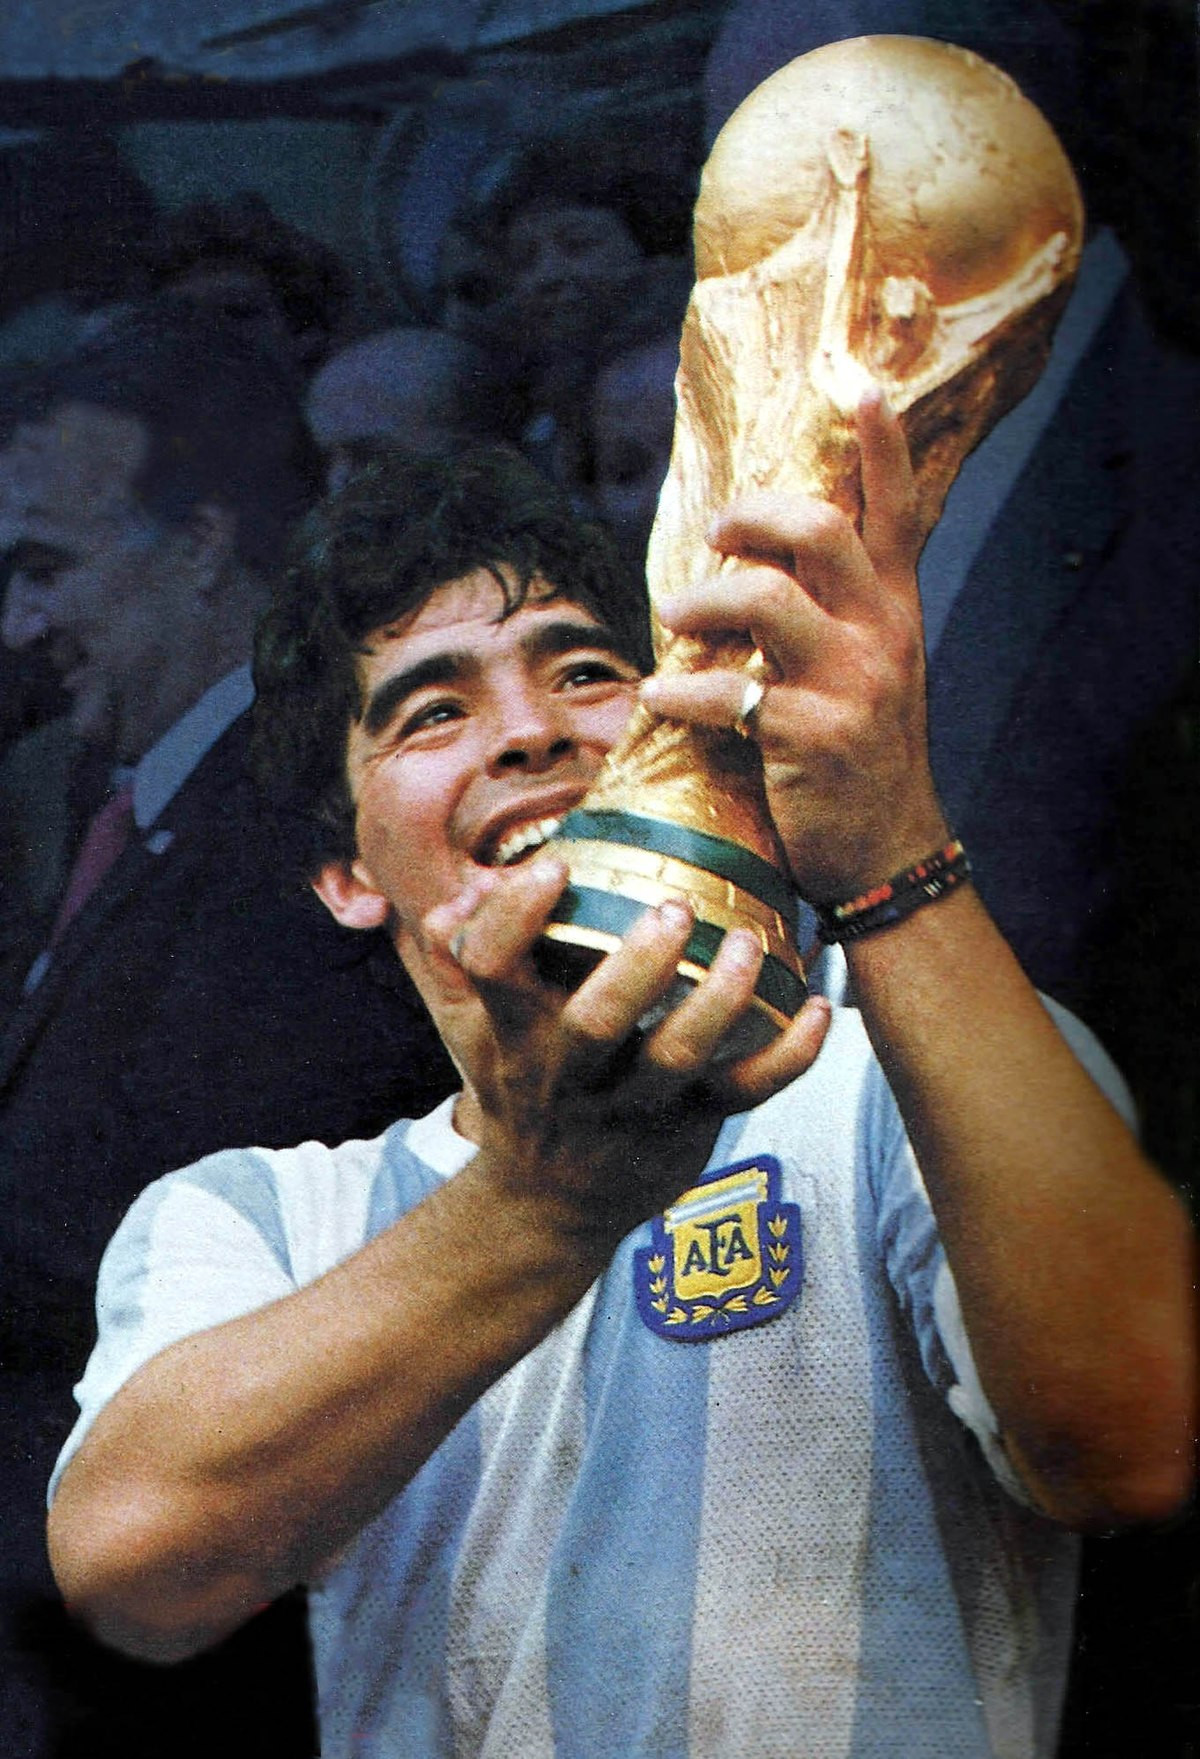  Diego Maradona nổi tiếng với bàn thắng bằng tay sai luật đầy tranh cãi